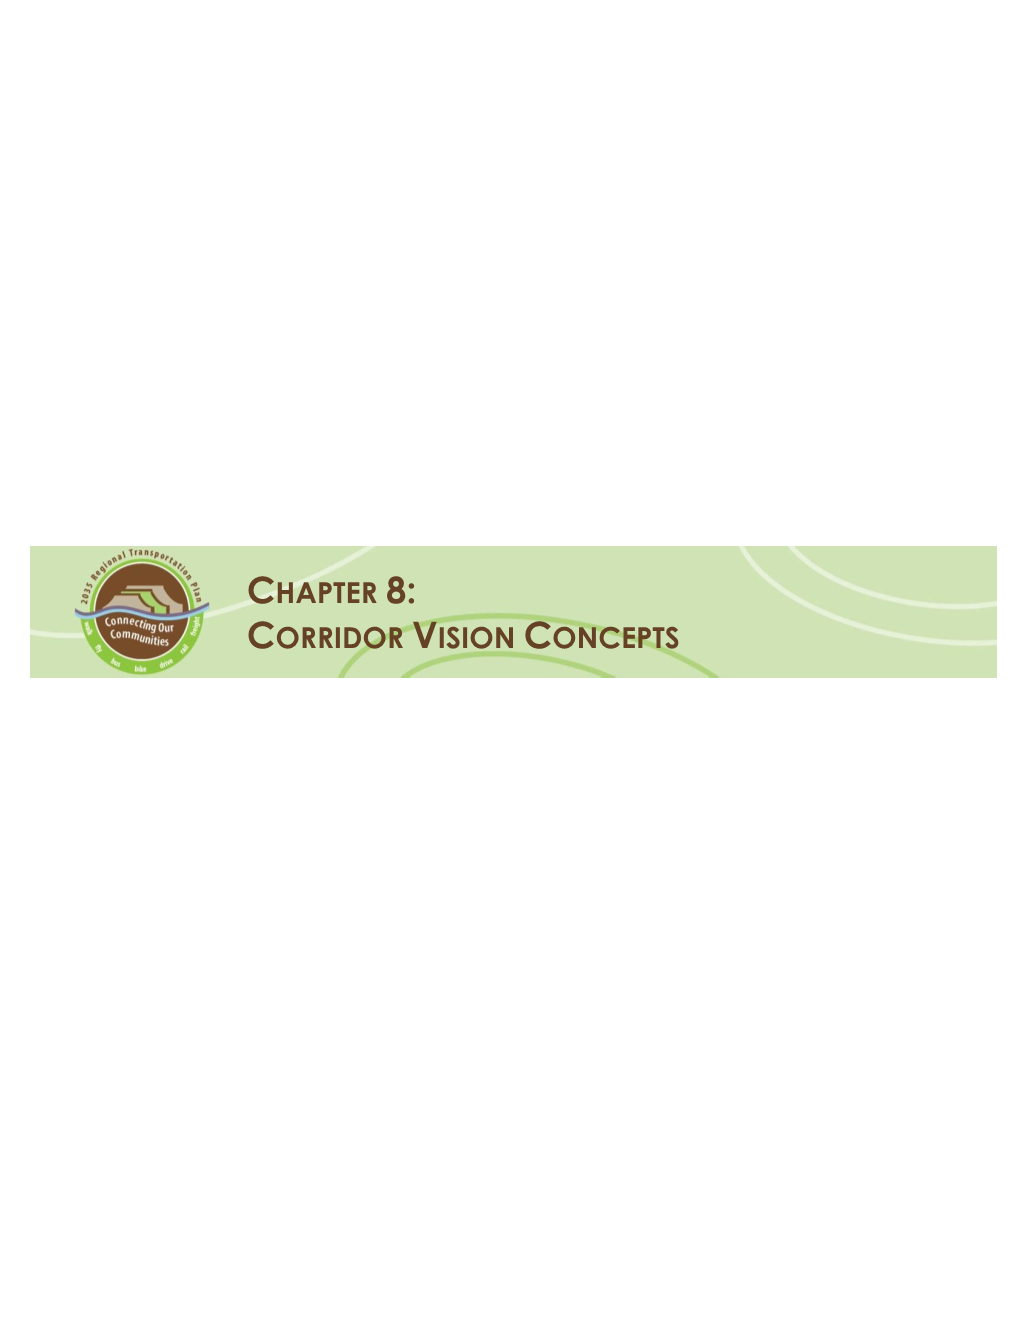 Corridor Vision Concepts